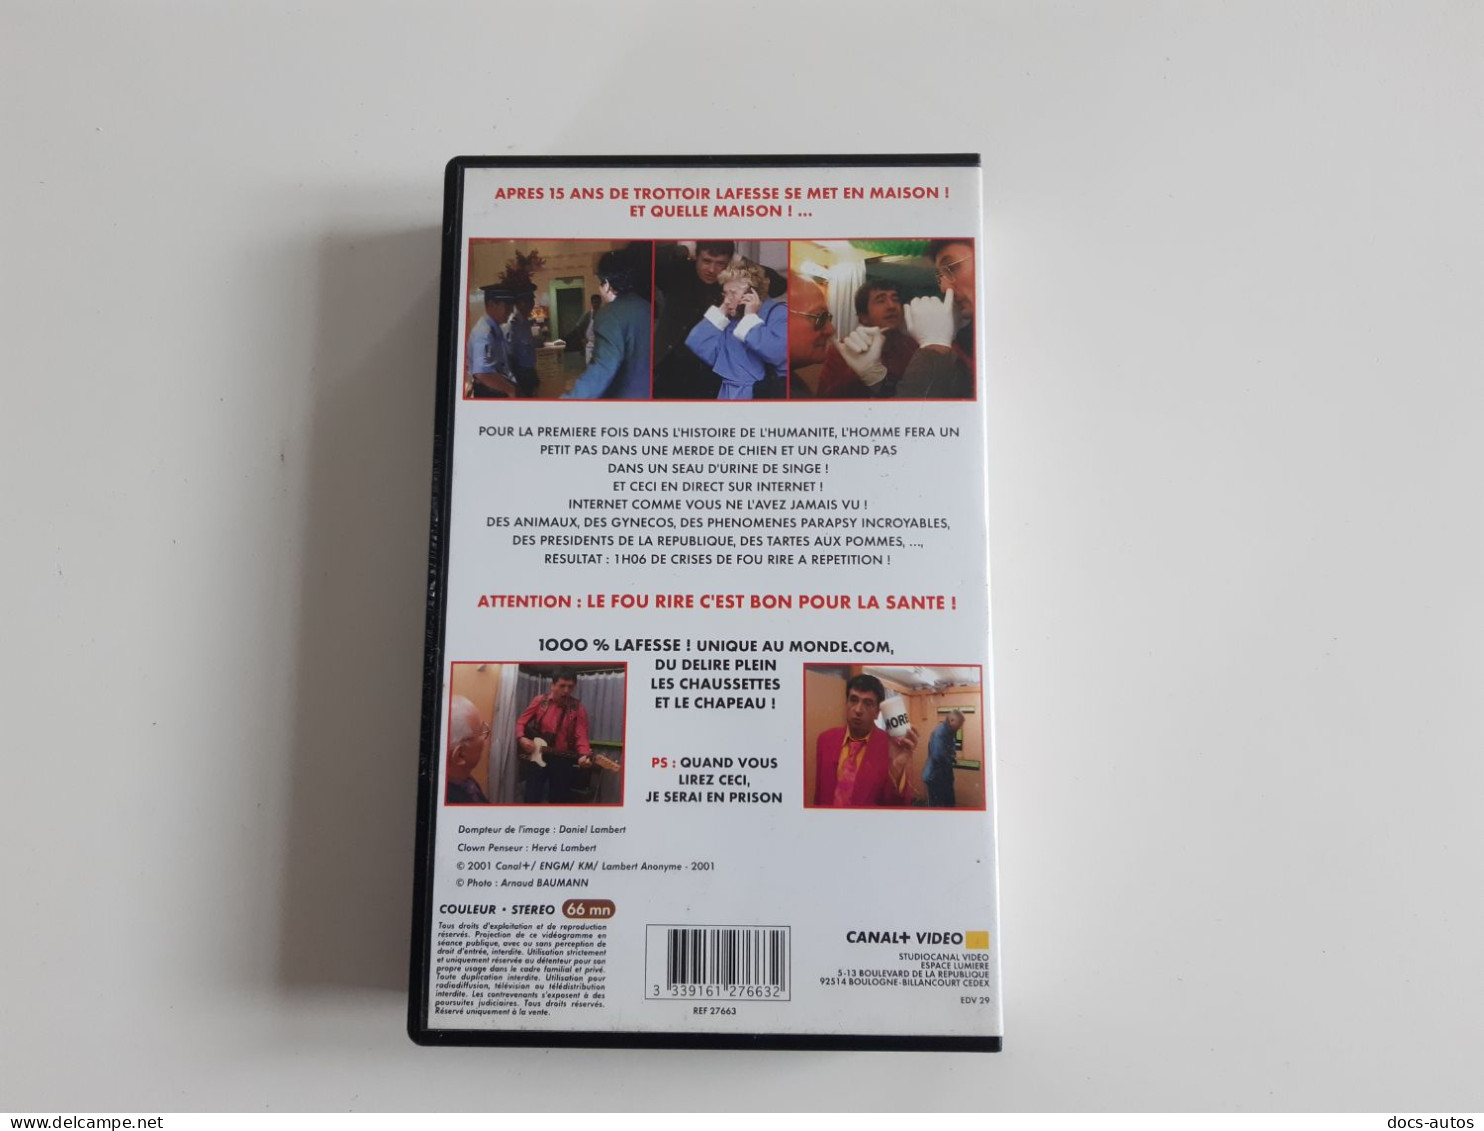 Cassette Vidéo VHS Lafesse Unique Au Monde.com - Comédie